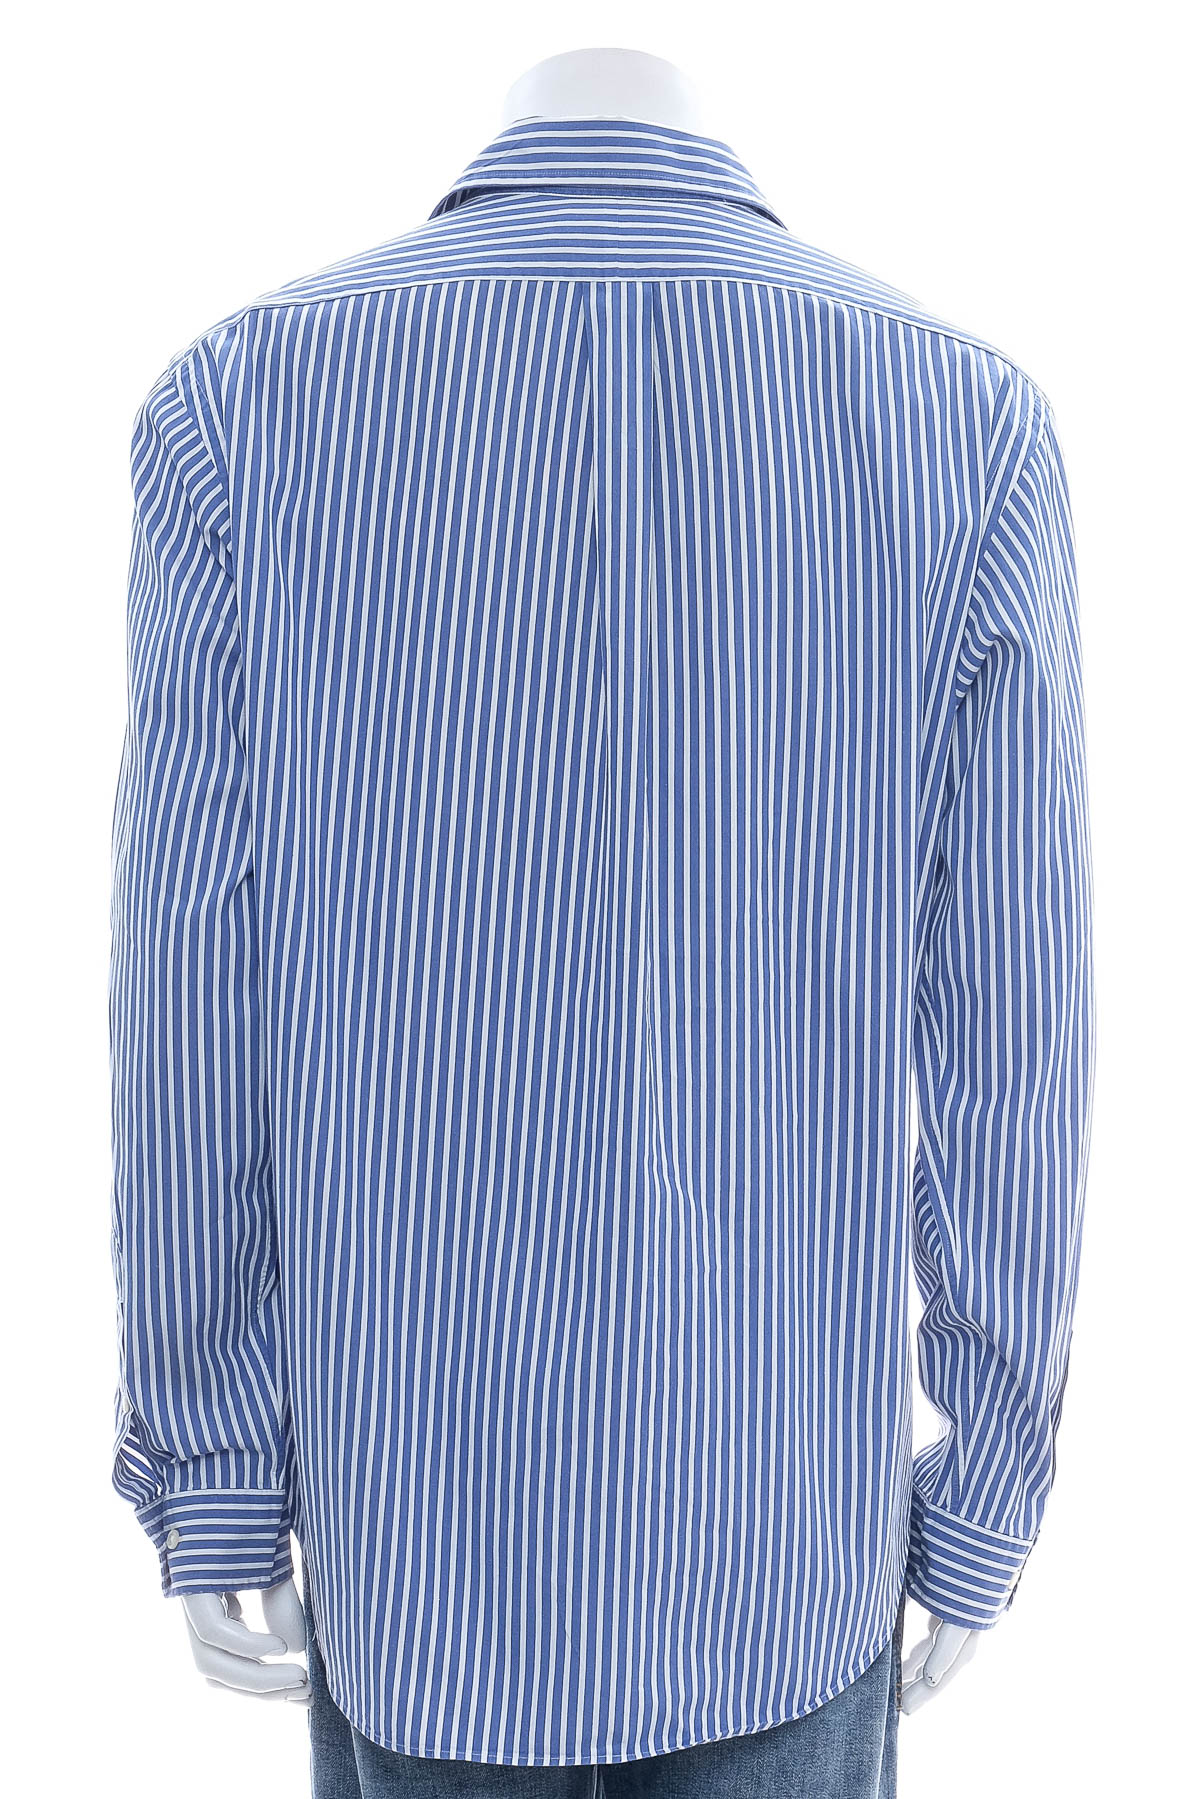 Men's shirt - Polo by Ralph Lauren - 1